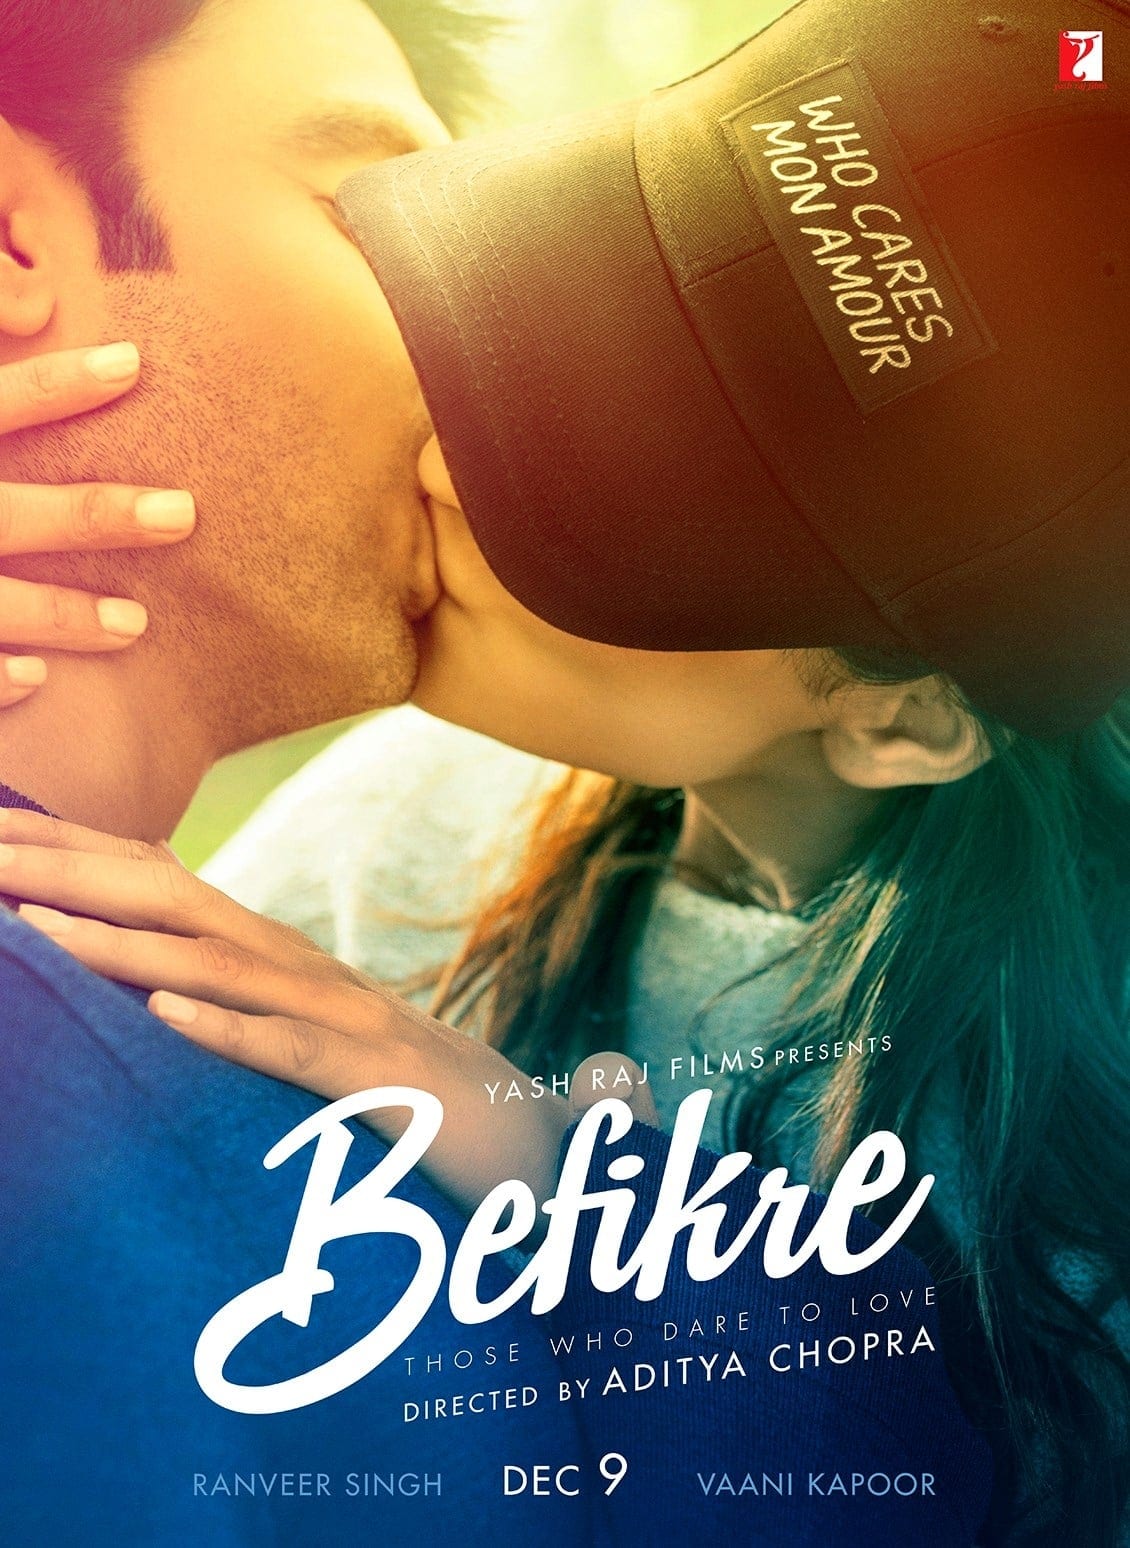 Poster for the movie "Befikre"